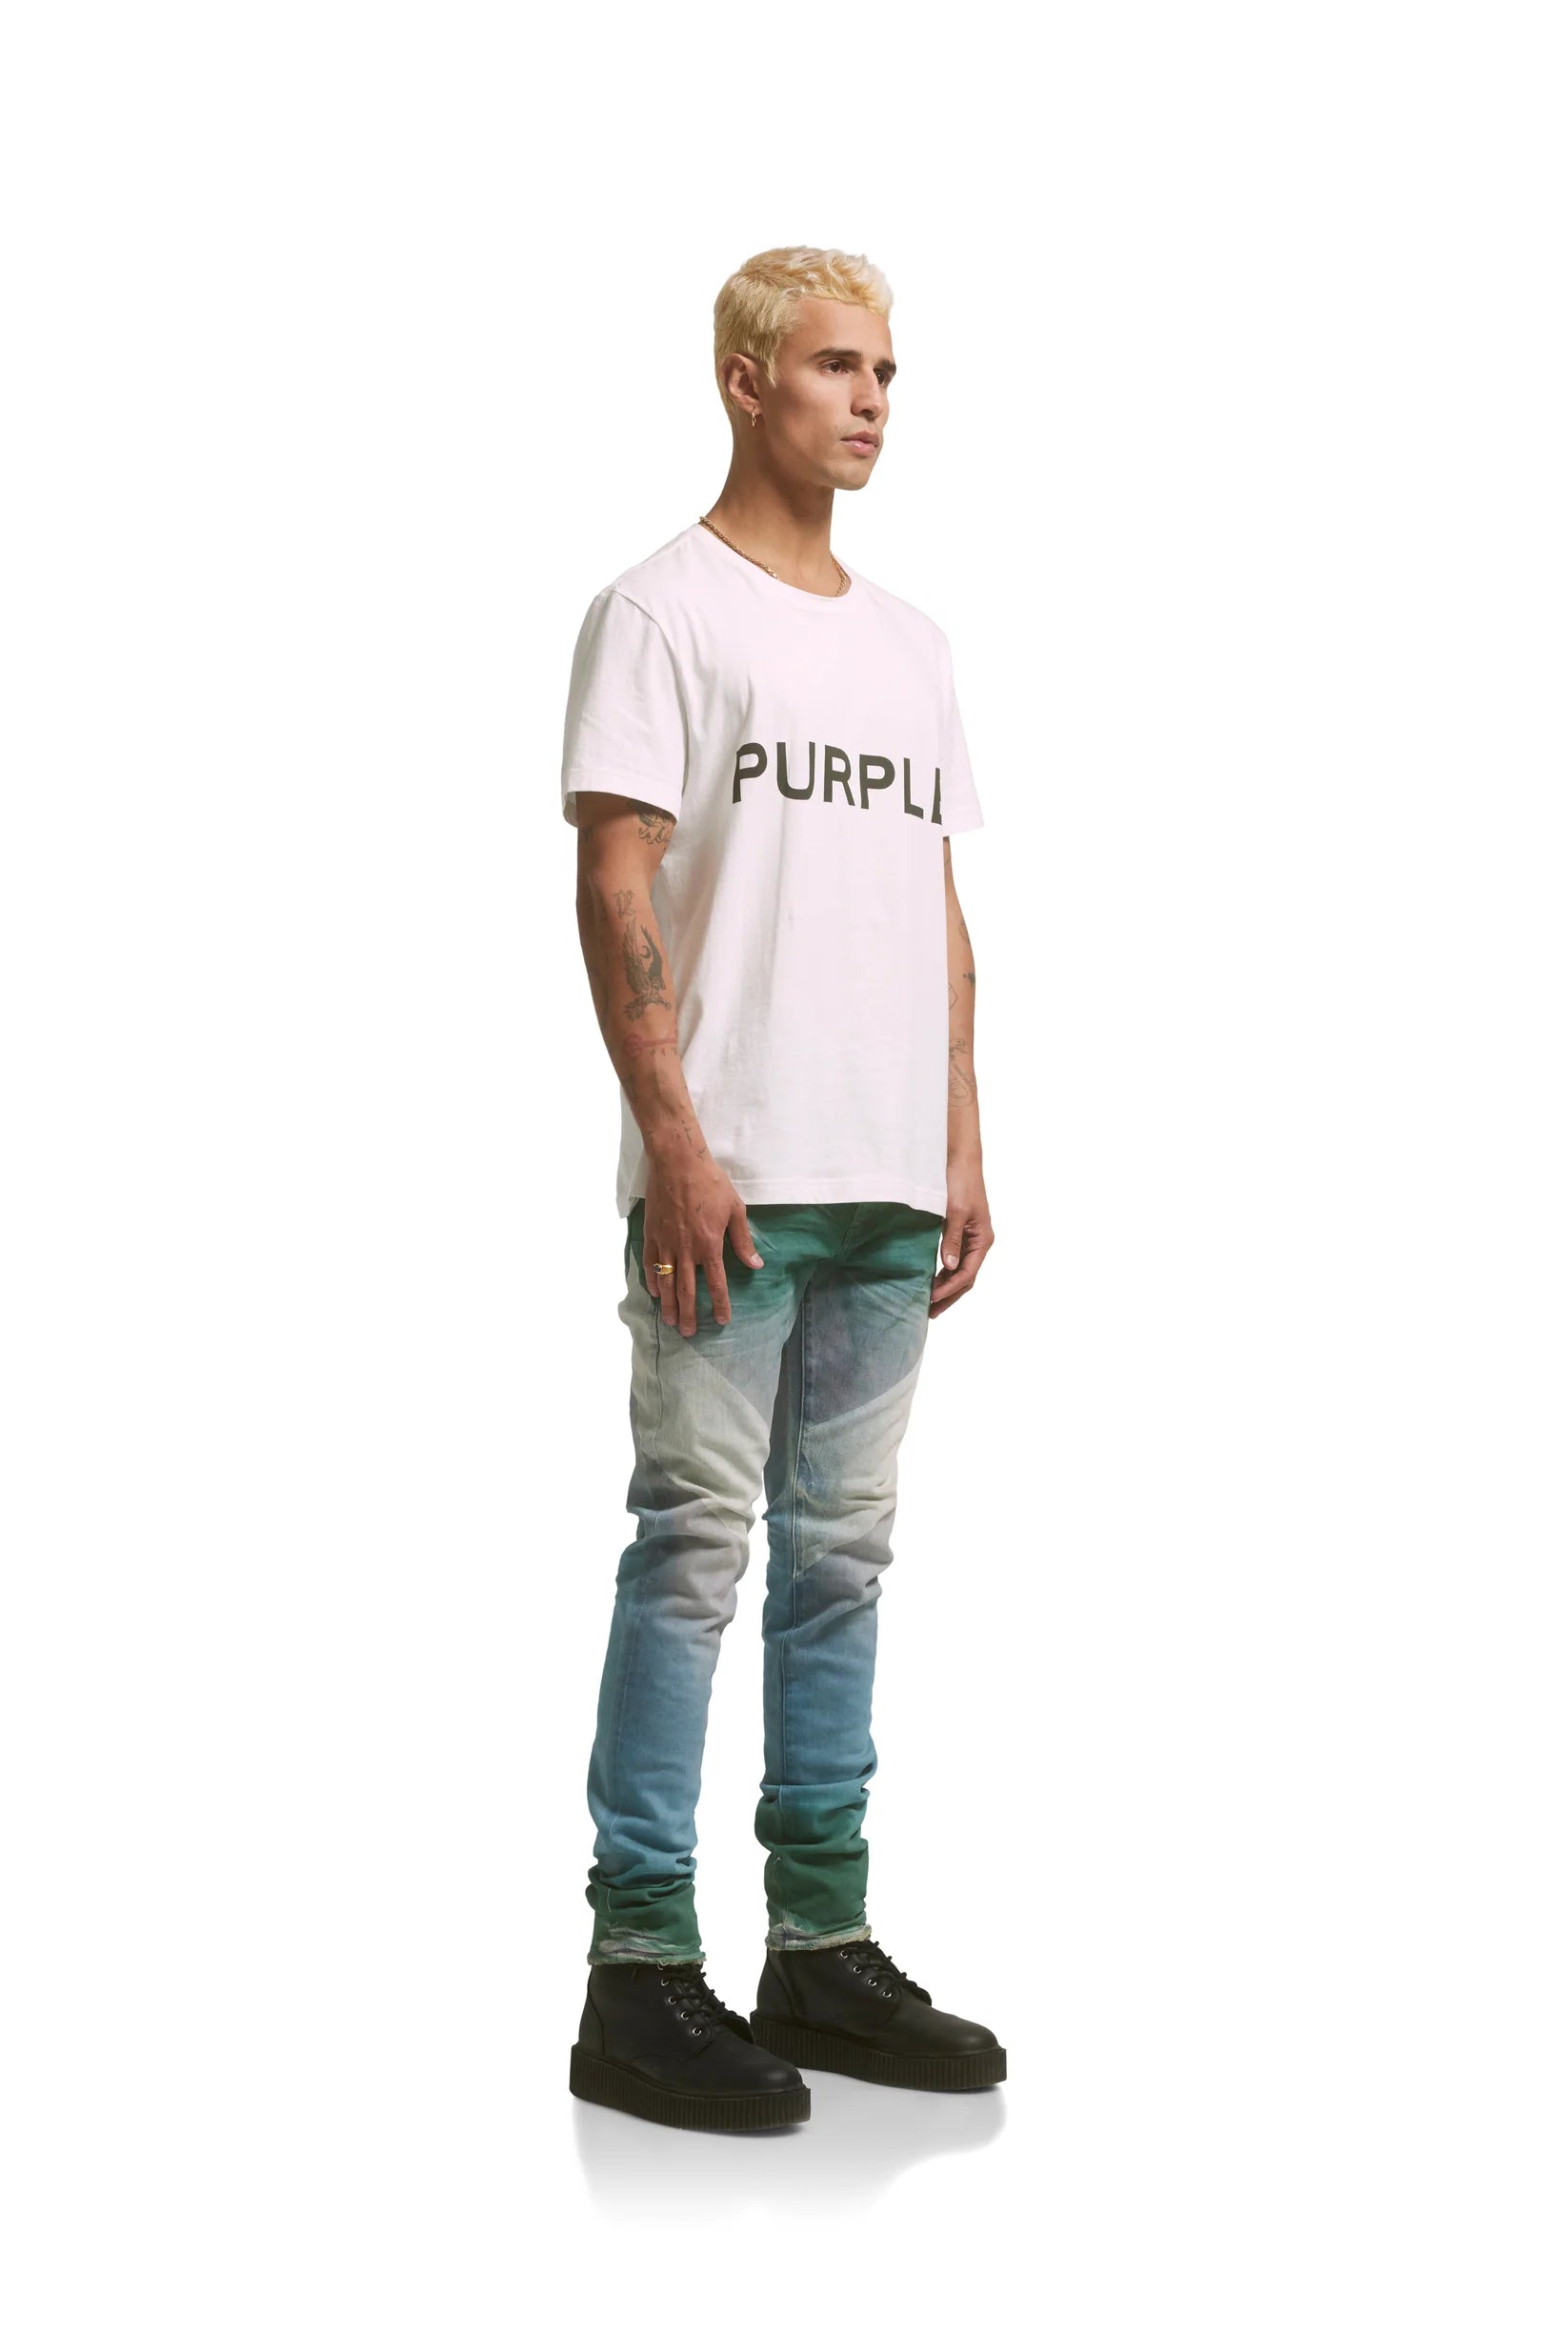 Purple Brand Jeans P001 Low Rise Skinny Indigo Four Pocket Destroy W S –  BLVD